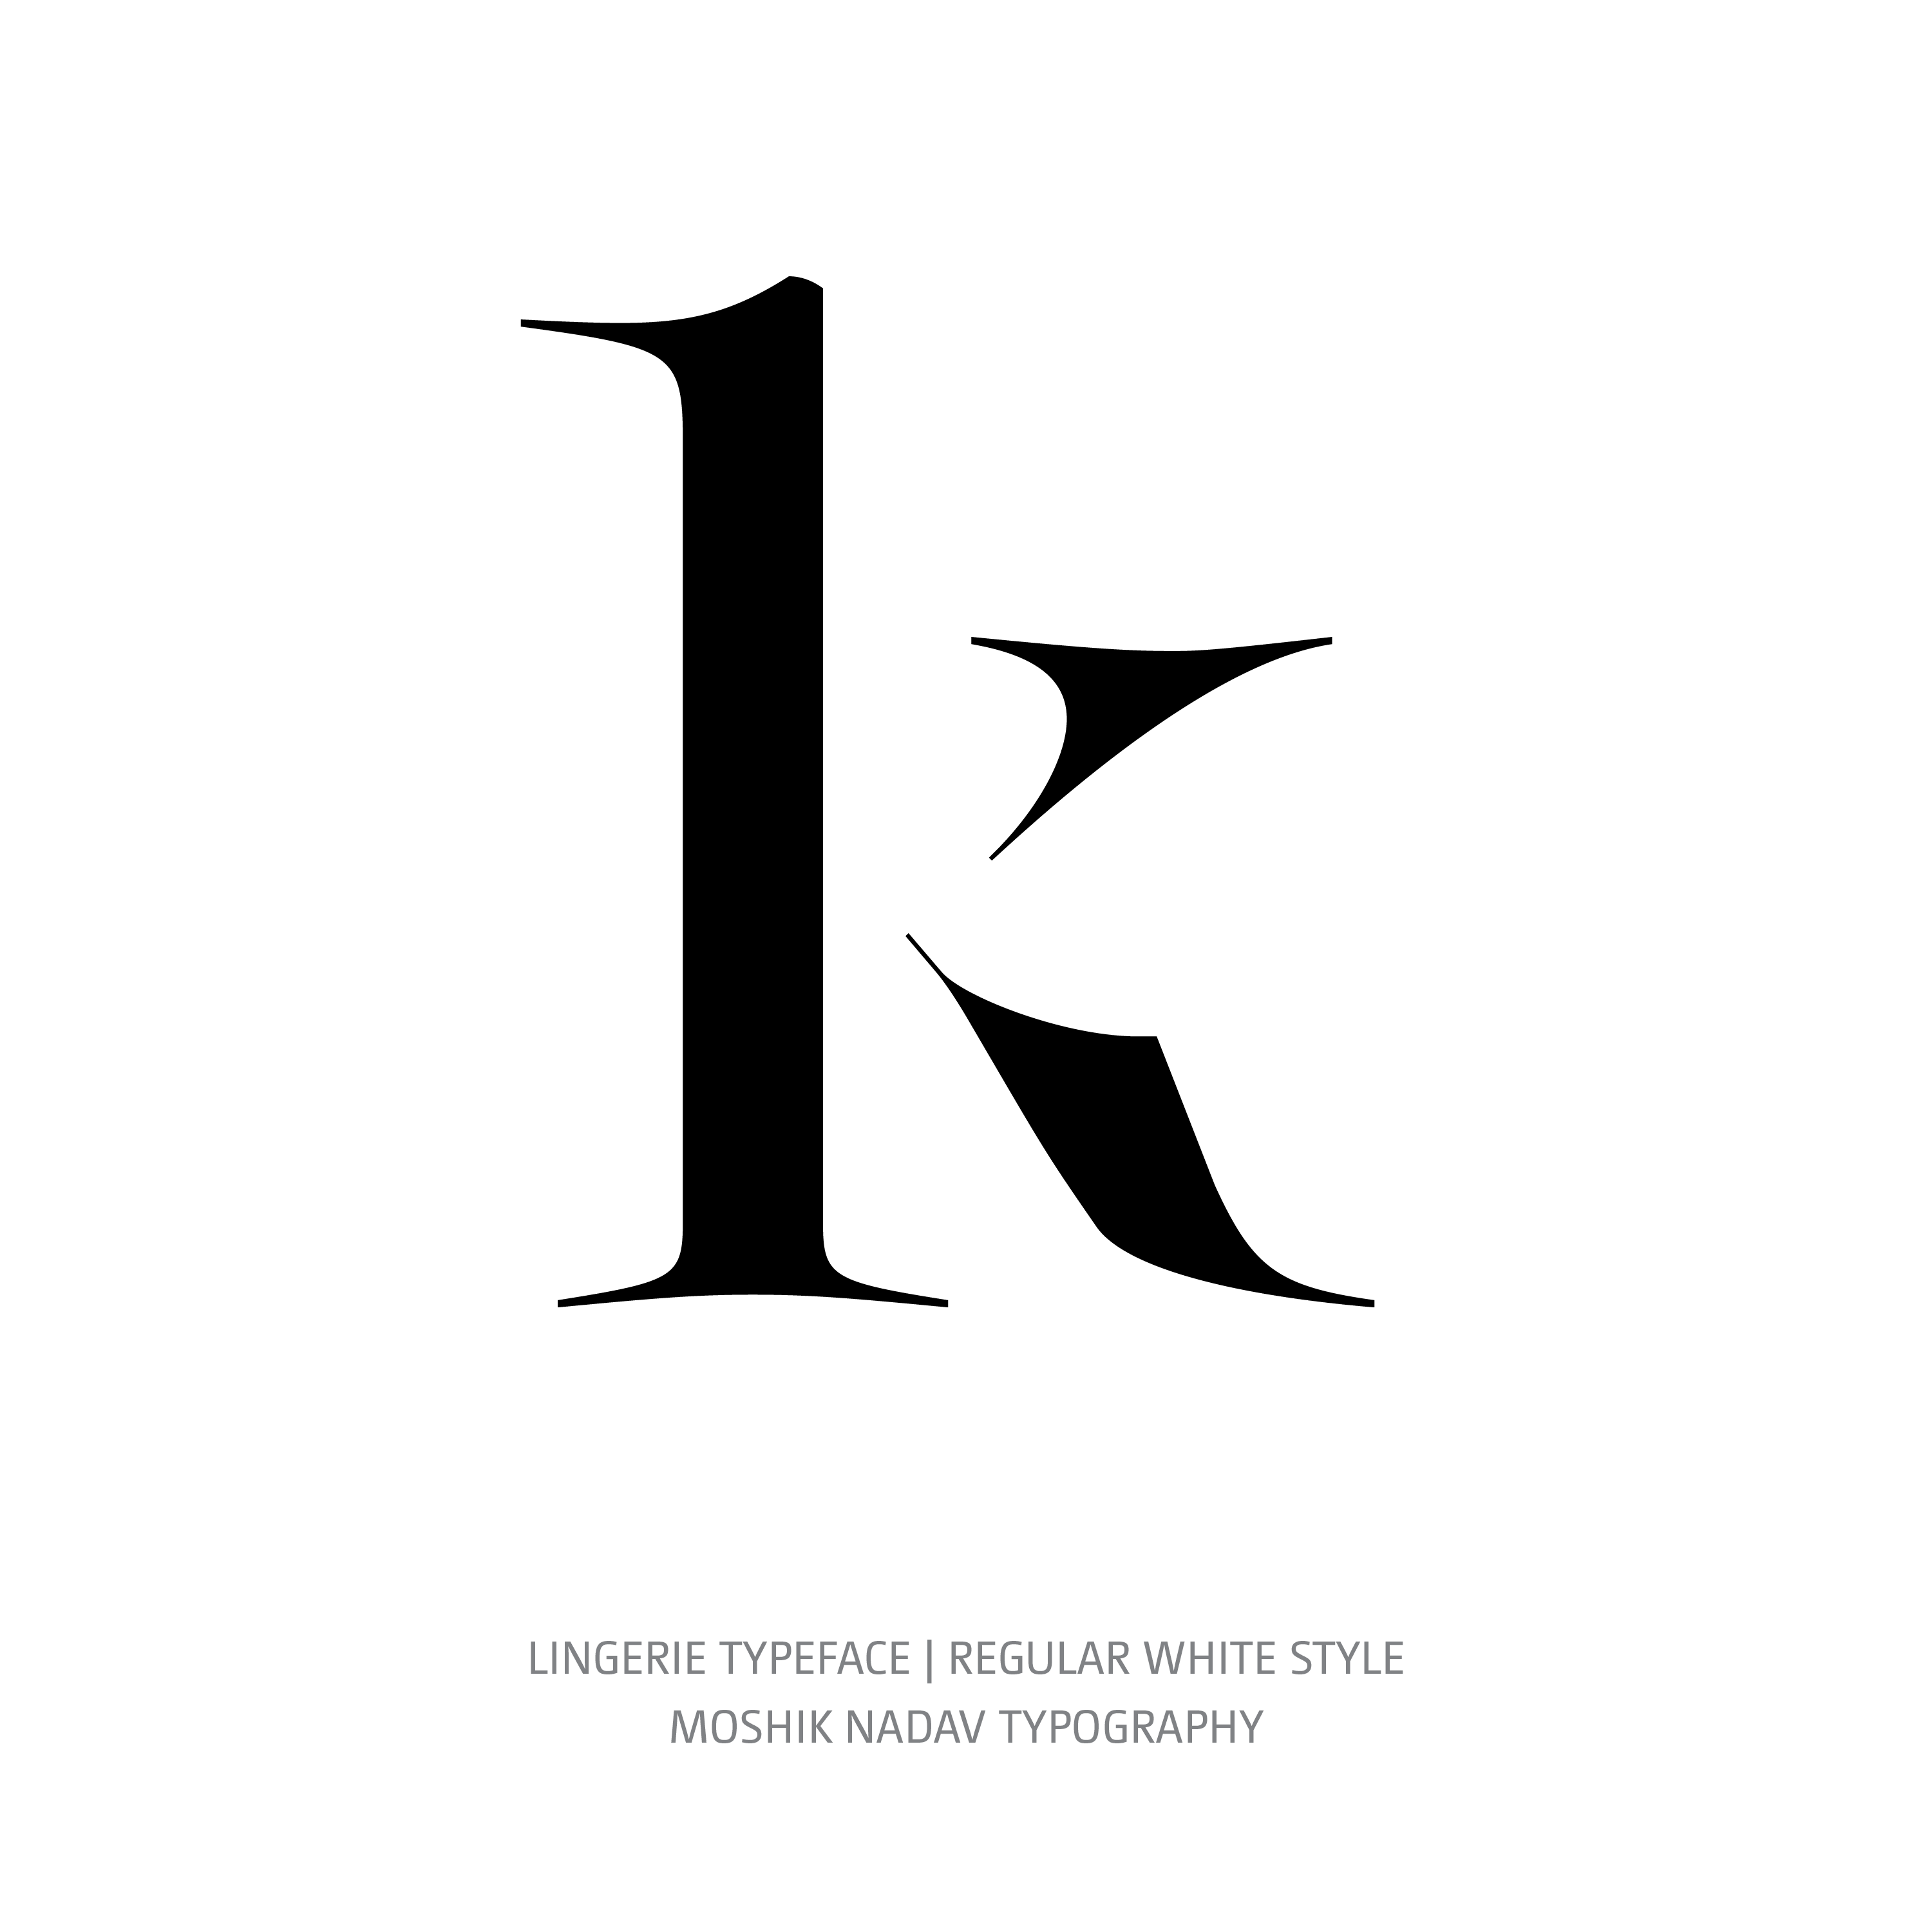 Lingerie Typeface Regular White k